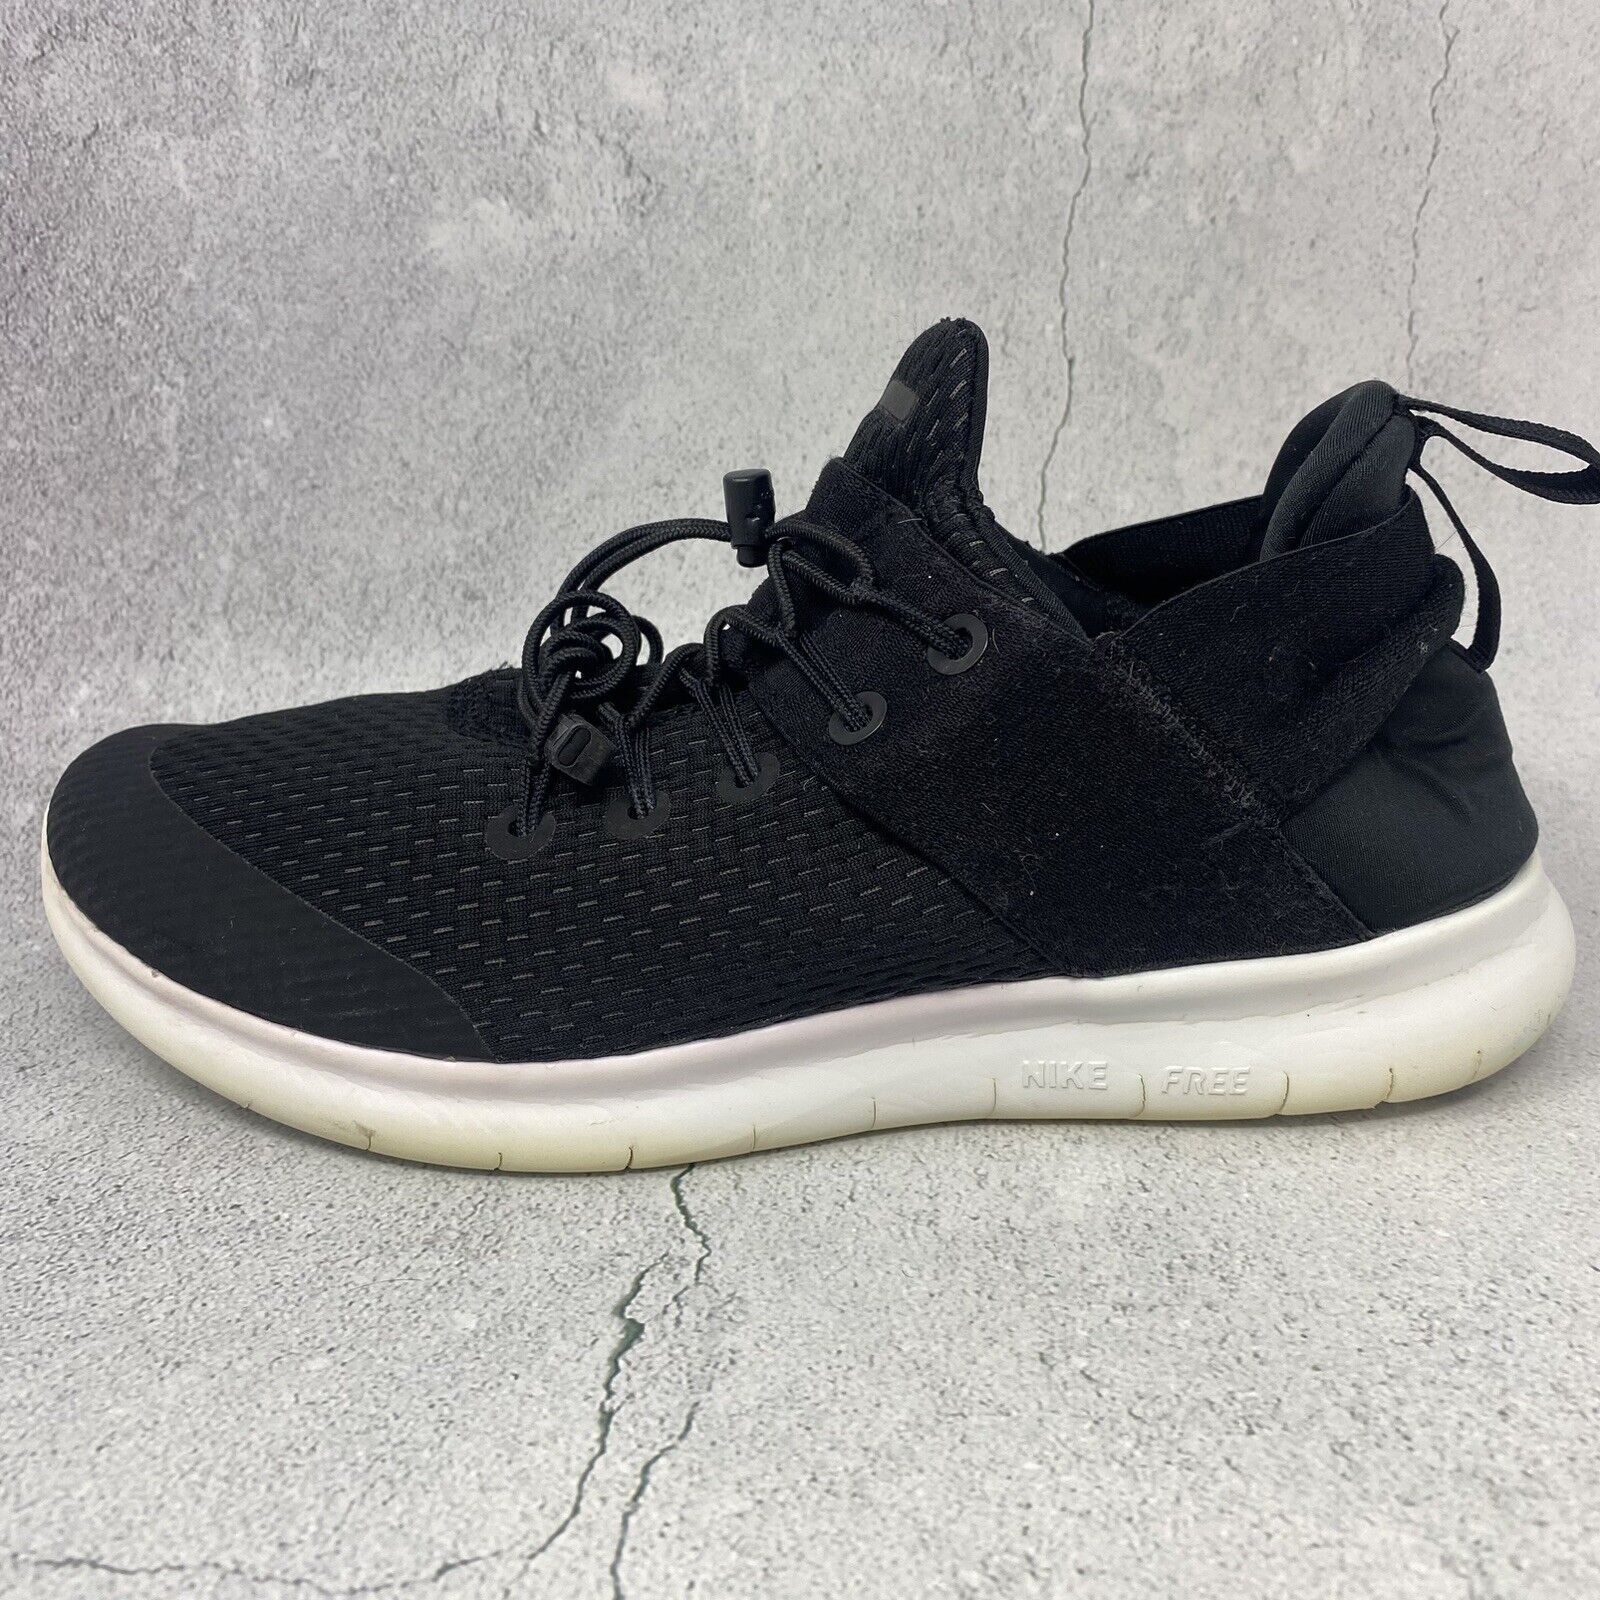 Size 9 Nike Free RN Commuter 2017 Black 2018 sale online | eBay